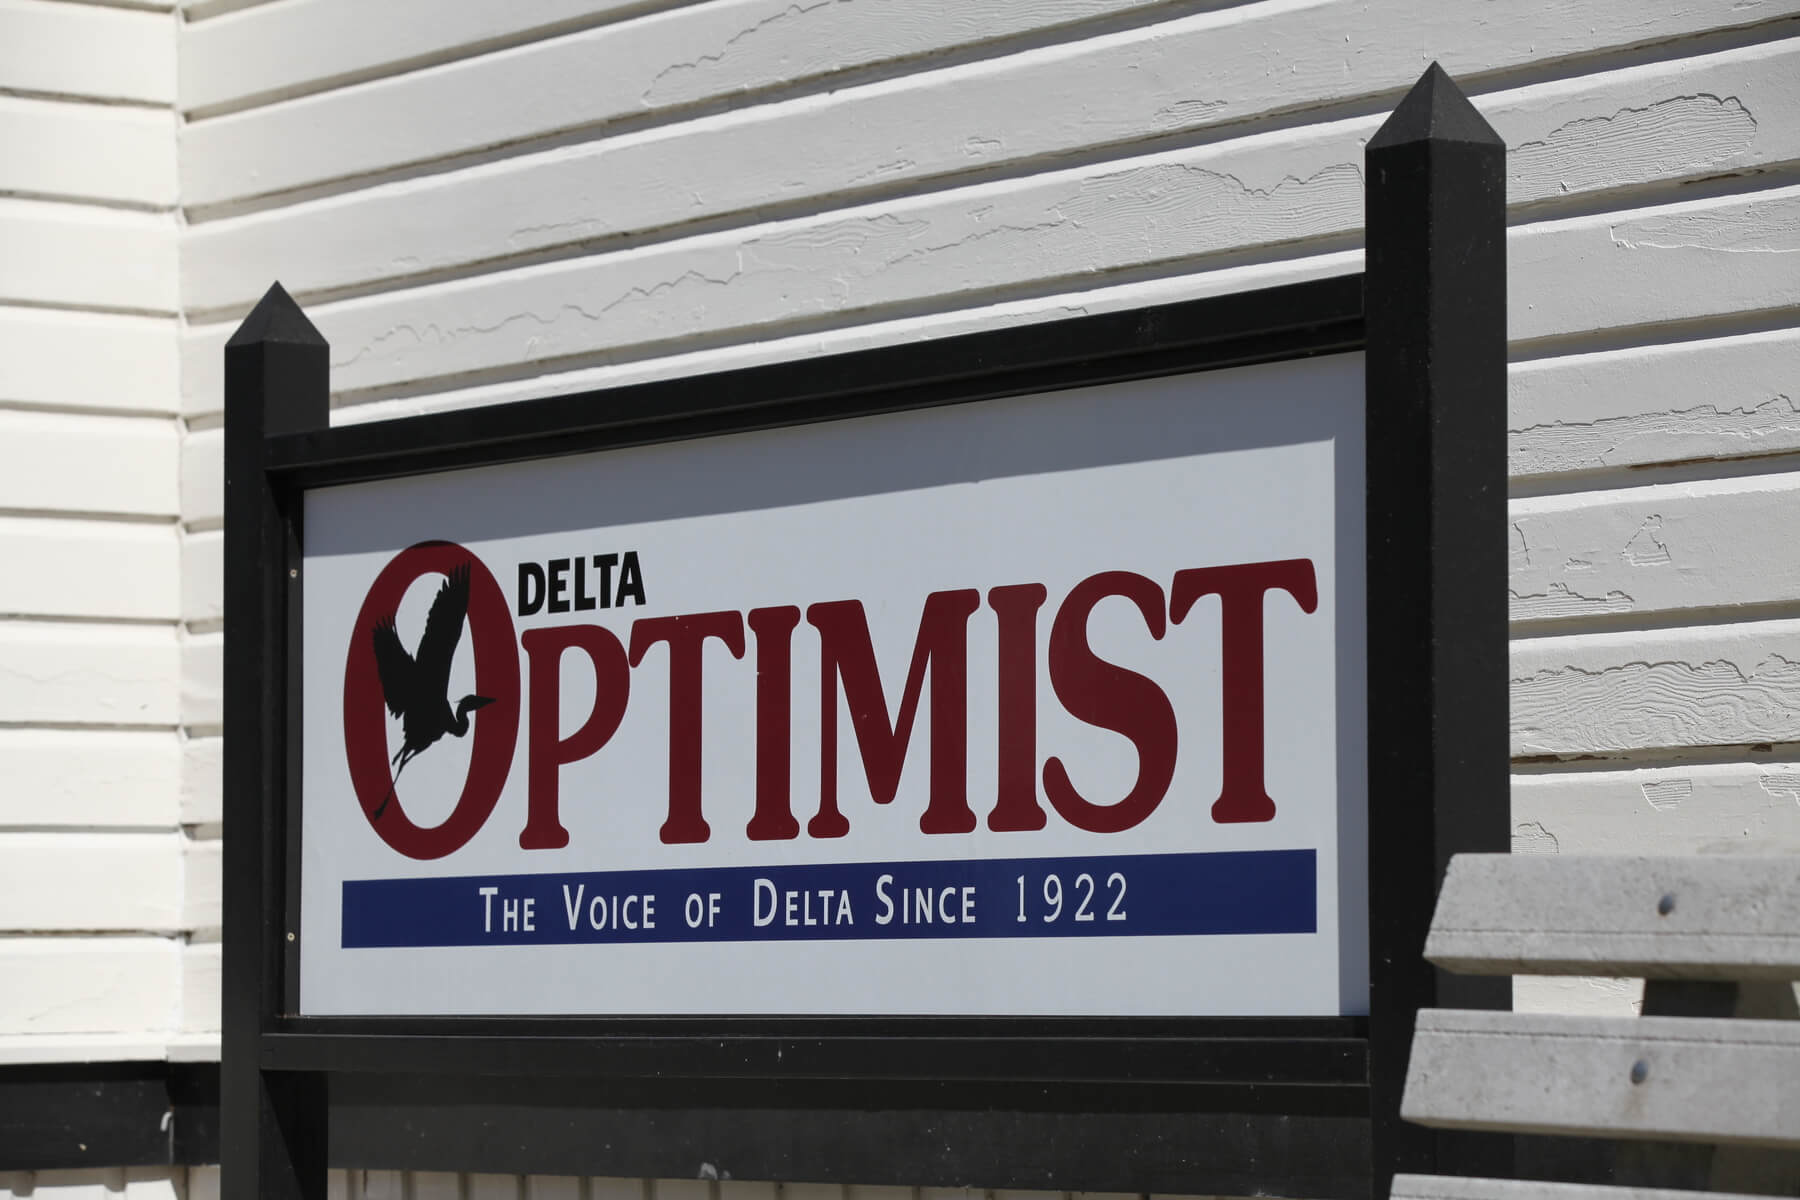 Delta Optimist